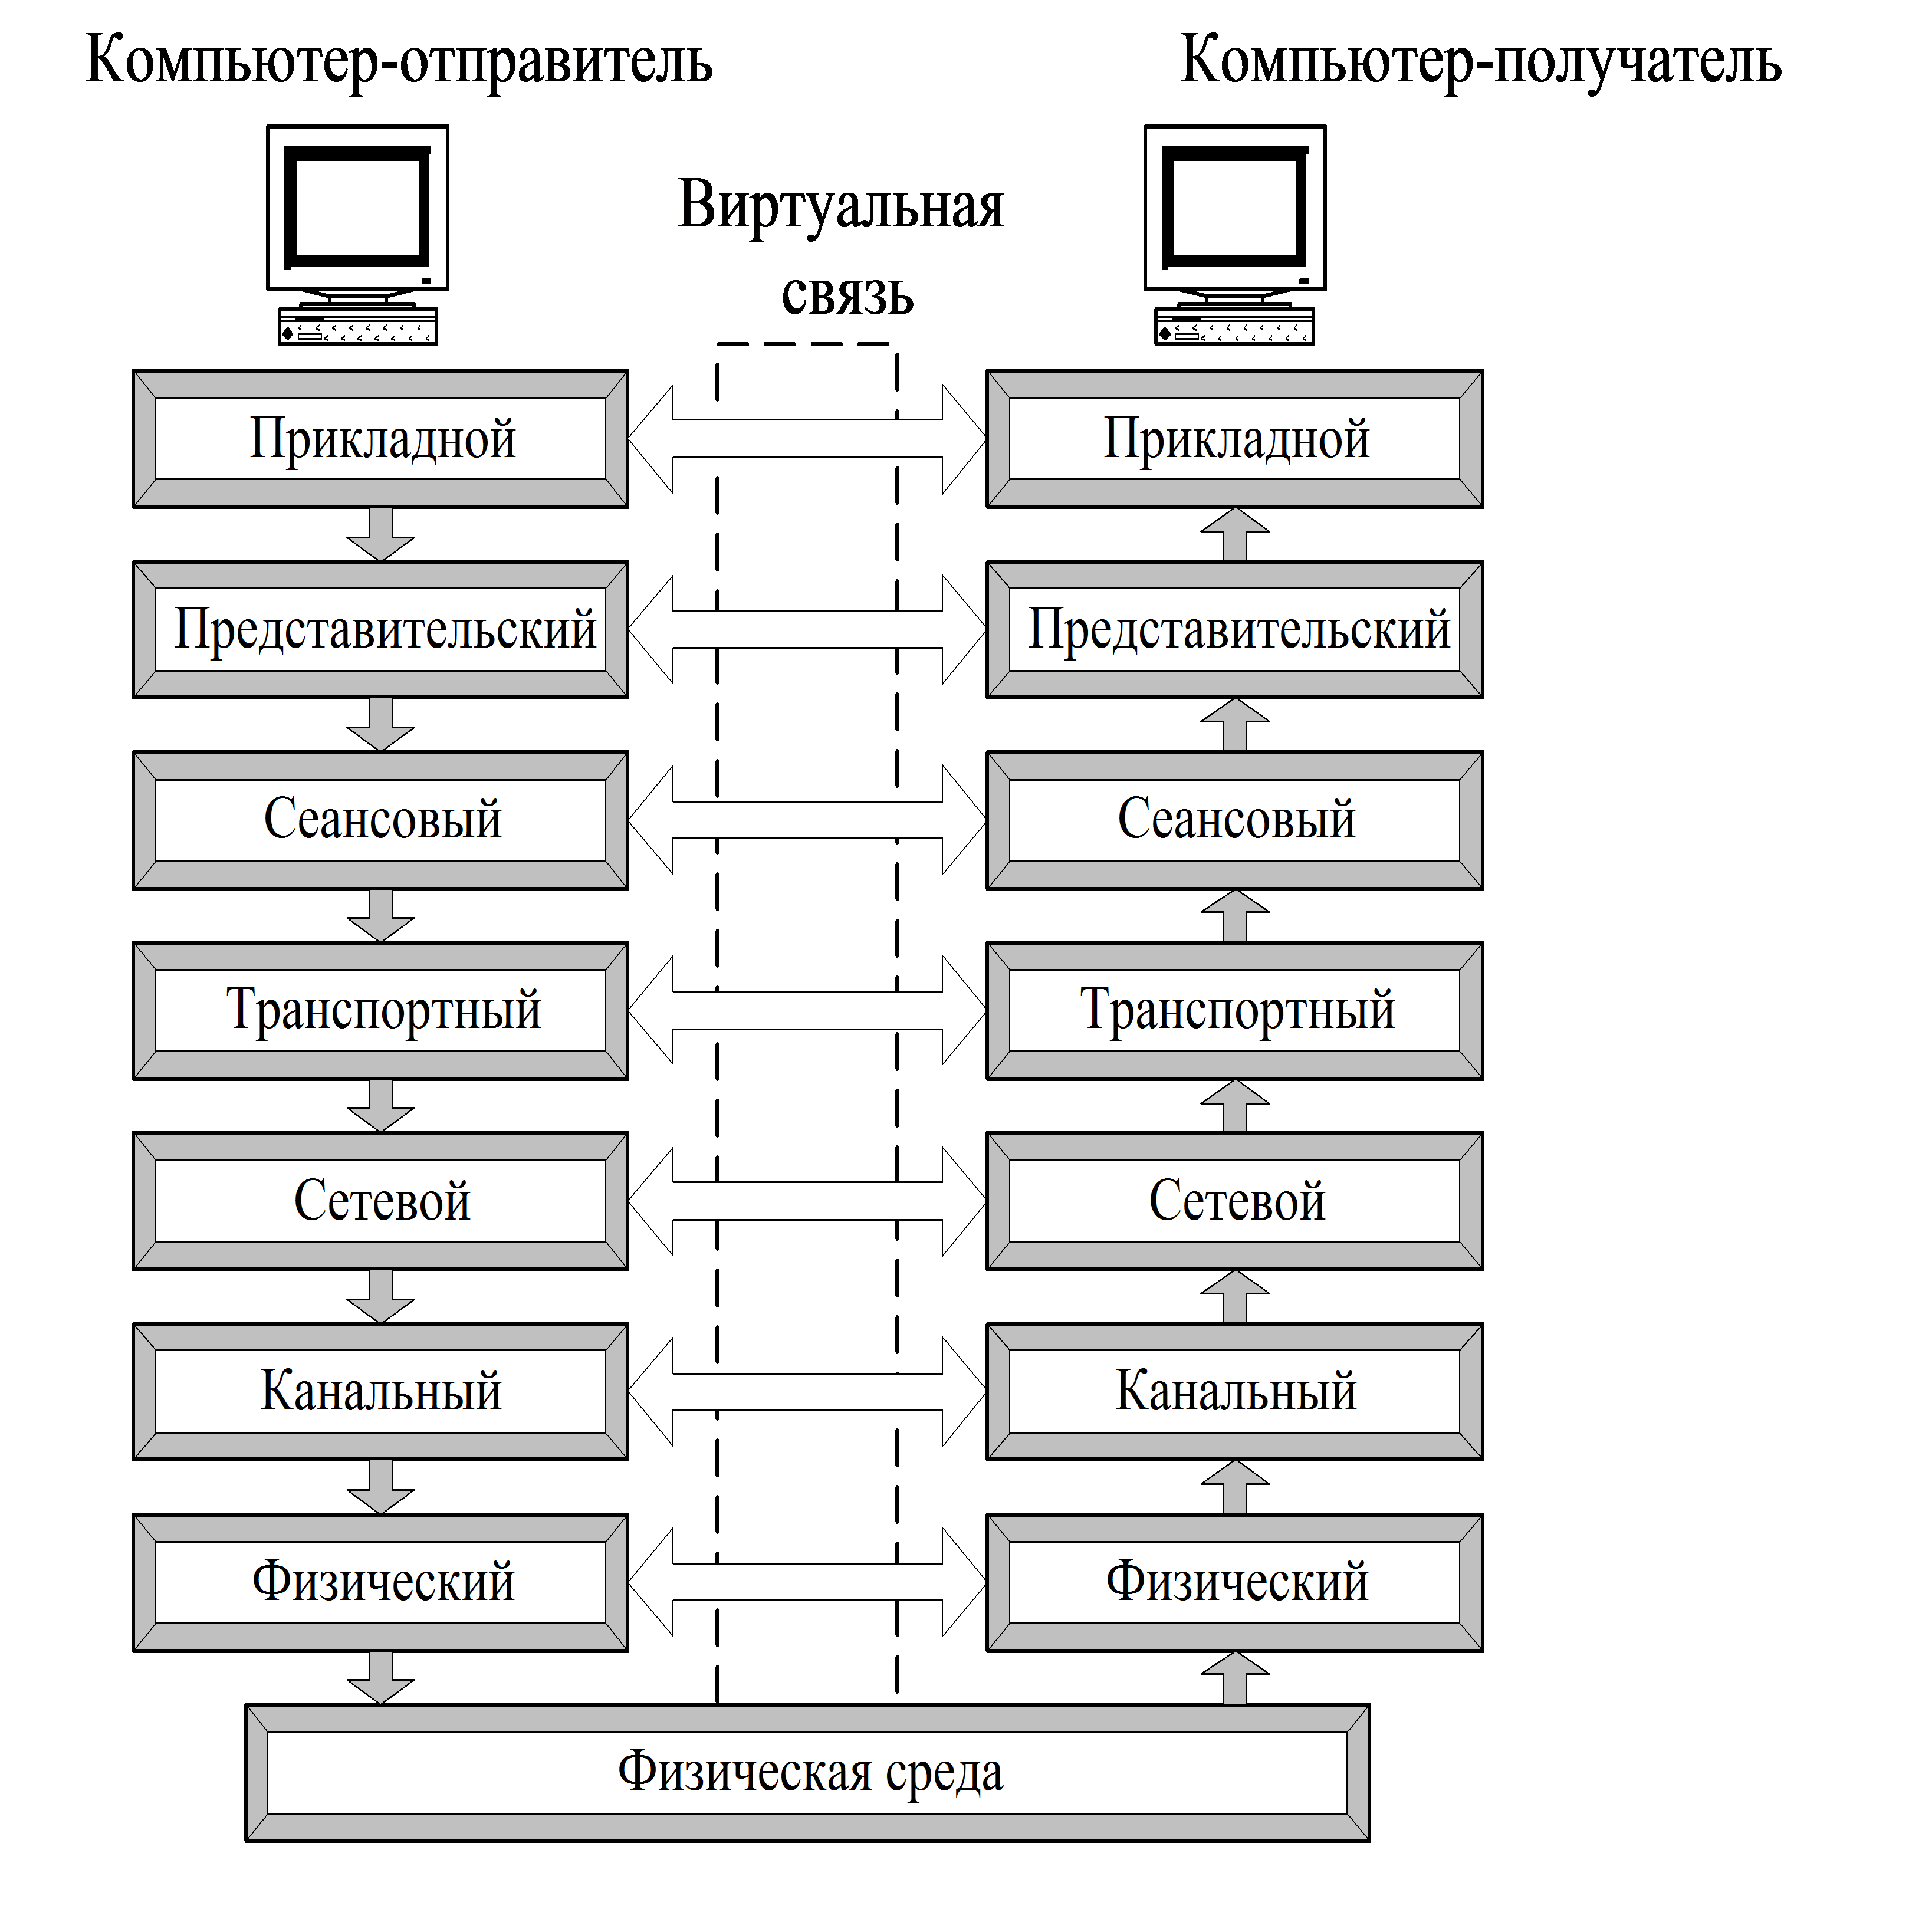 Модели взаимодействия открытых систем» (osi уровни. Схема взаимодействия компьютеров в базовой эталонной модели osi. Уровни эталонной модели сетевого взаимодействия osi. Модель взаимодействия открытых систем ISO/osi. Компьютер отправитель